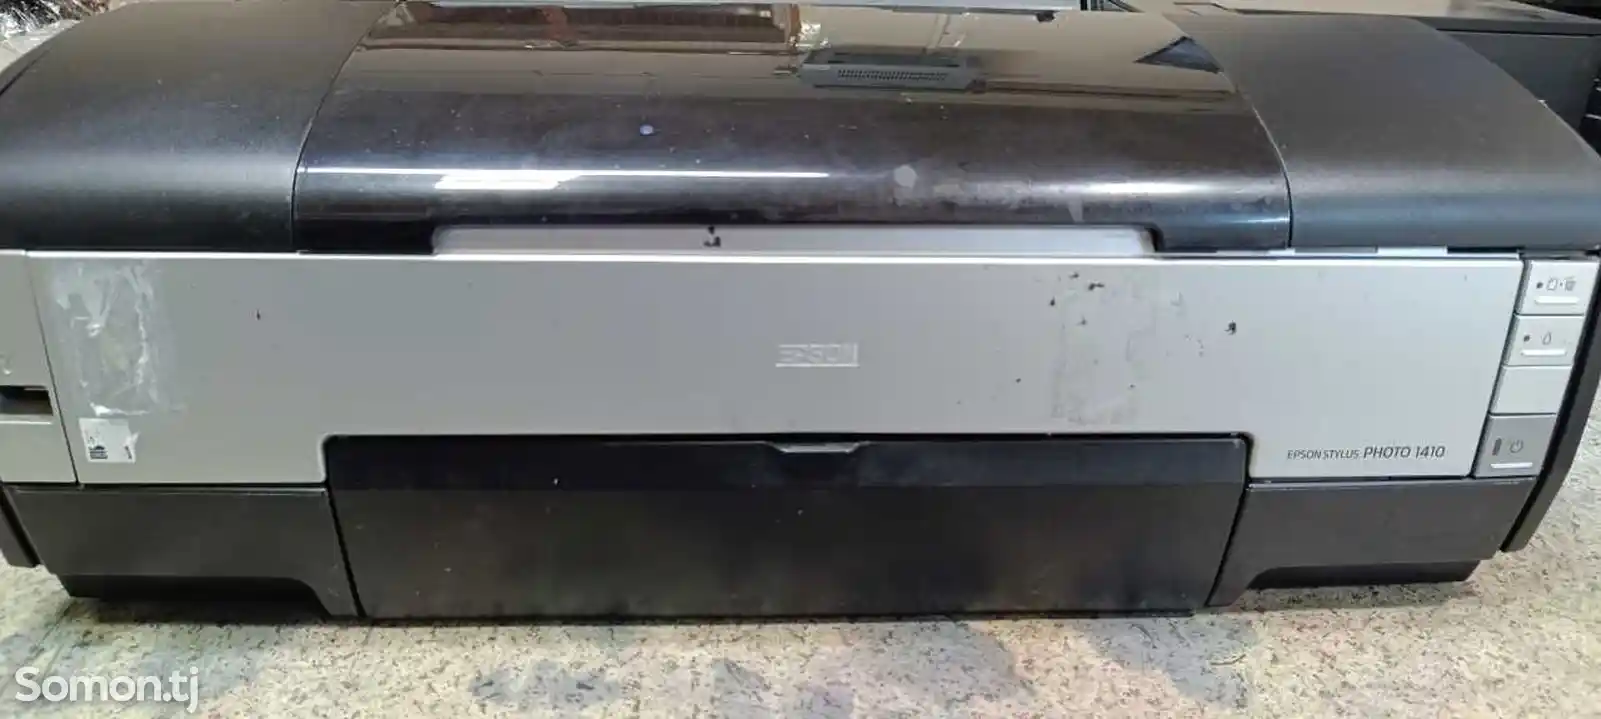 Принтер Epson A3 1410-1